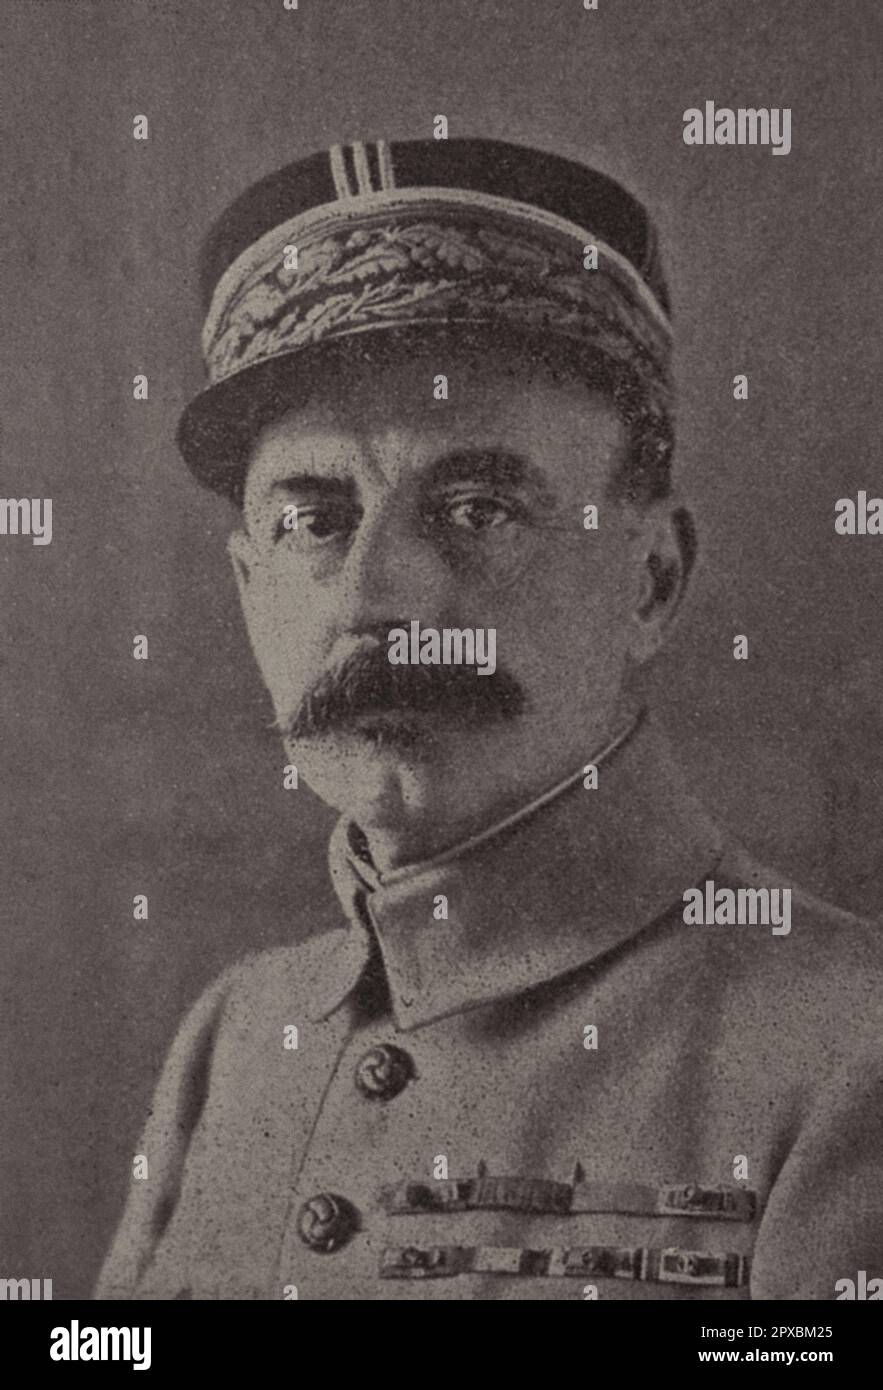 Le général français Debeney. Marie Eugène Debeney (1864 – 1943) était un général de l'armée française. Il commanda un corps à la bataille de la somme puis, au second semestre de 1917, servit de chef d'état-major au Commandant en chef français Philippe Pétain. Il commande ensuite la première armée qui, aux côtés des forces de l'Empire britannique, joue un rôle important dans les combats mobiles de 1918, y compris à la bataille d'Amiens et au Storming de la ligne Hindenburg. Il a ensuite occupé un poste important de chef d'état-major général de l'armée française en 1920s. Banque D'Images